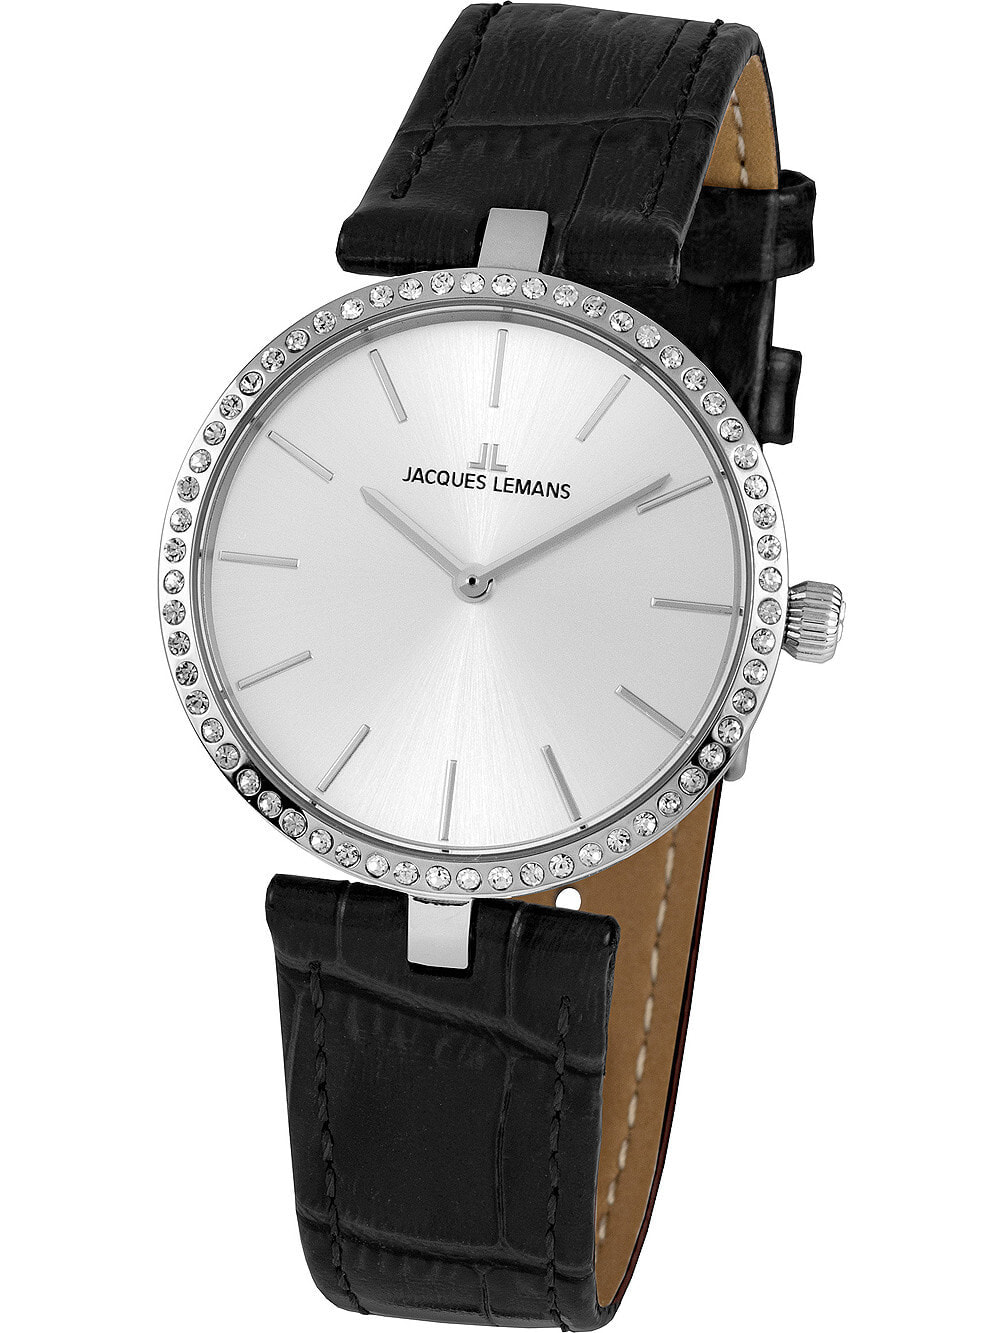 Женские наручные кварцевые часы Jacques Lemans  ремешок кожаный, базель декорирован камнями.